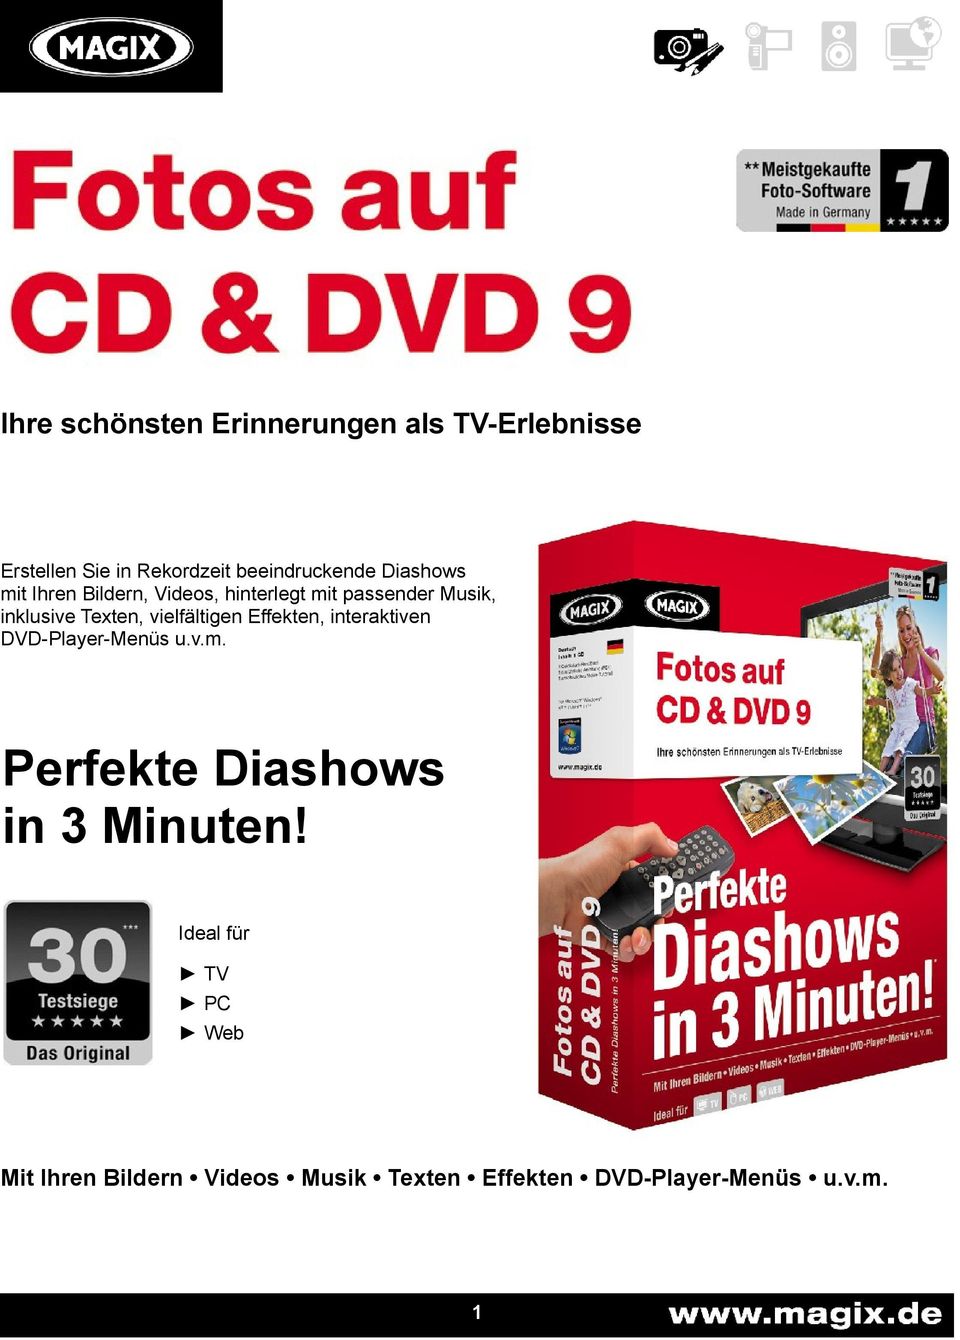 vielfältigen Effekten, interaktiven DVD-Player-Menüs u.v.m.